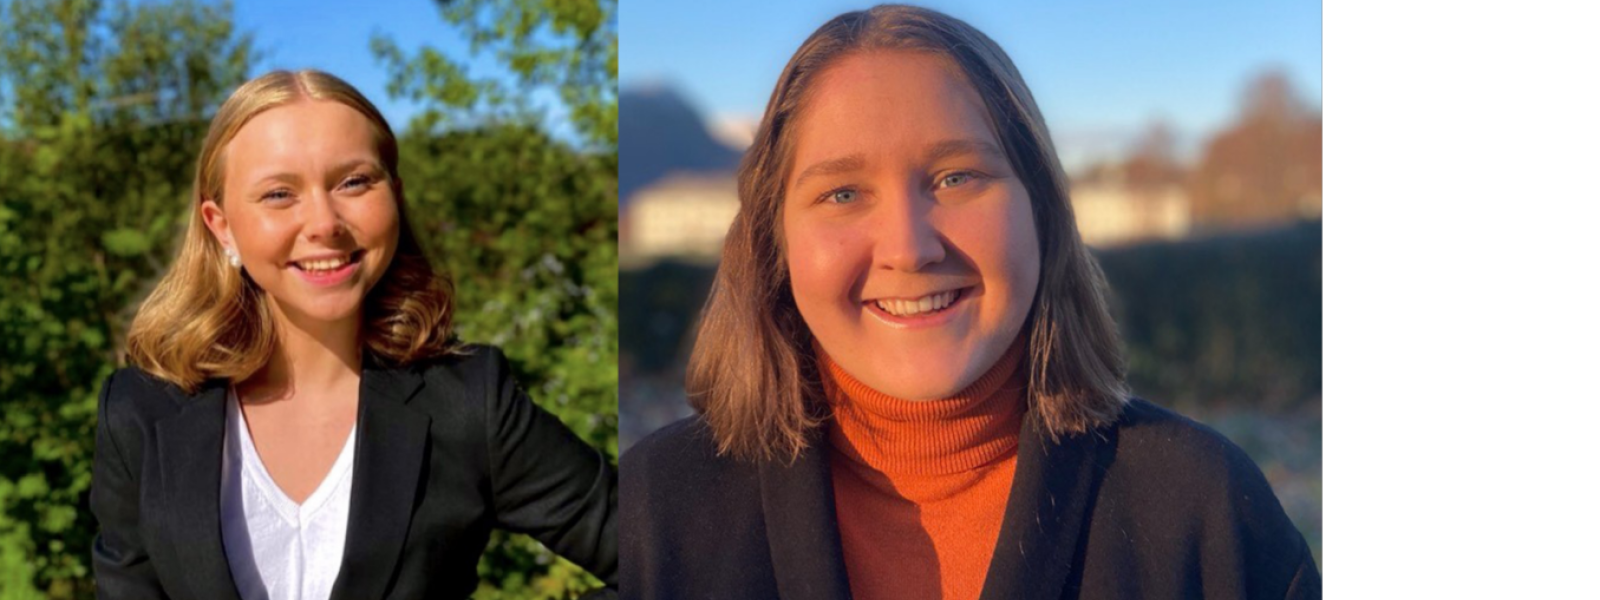 Frå venstre: Tina-Evelyn Vikestad Buvarp og Signe Bjotveit skal vera praktikantar i Sp fram til valet i september -21